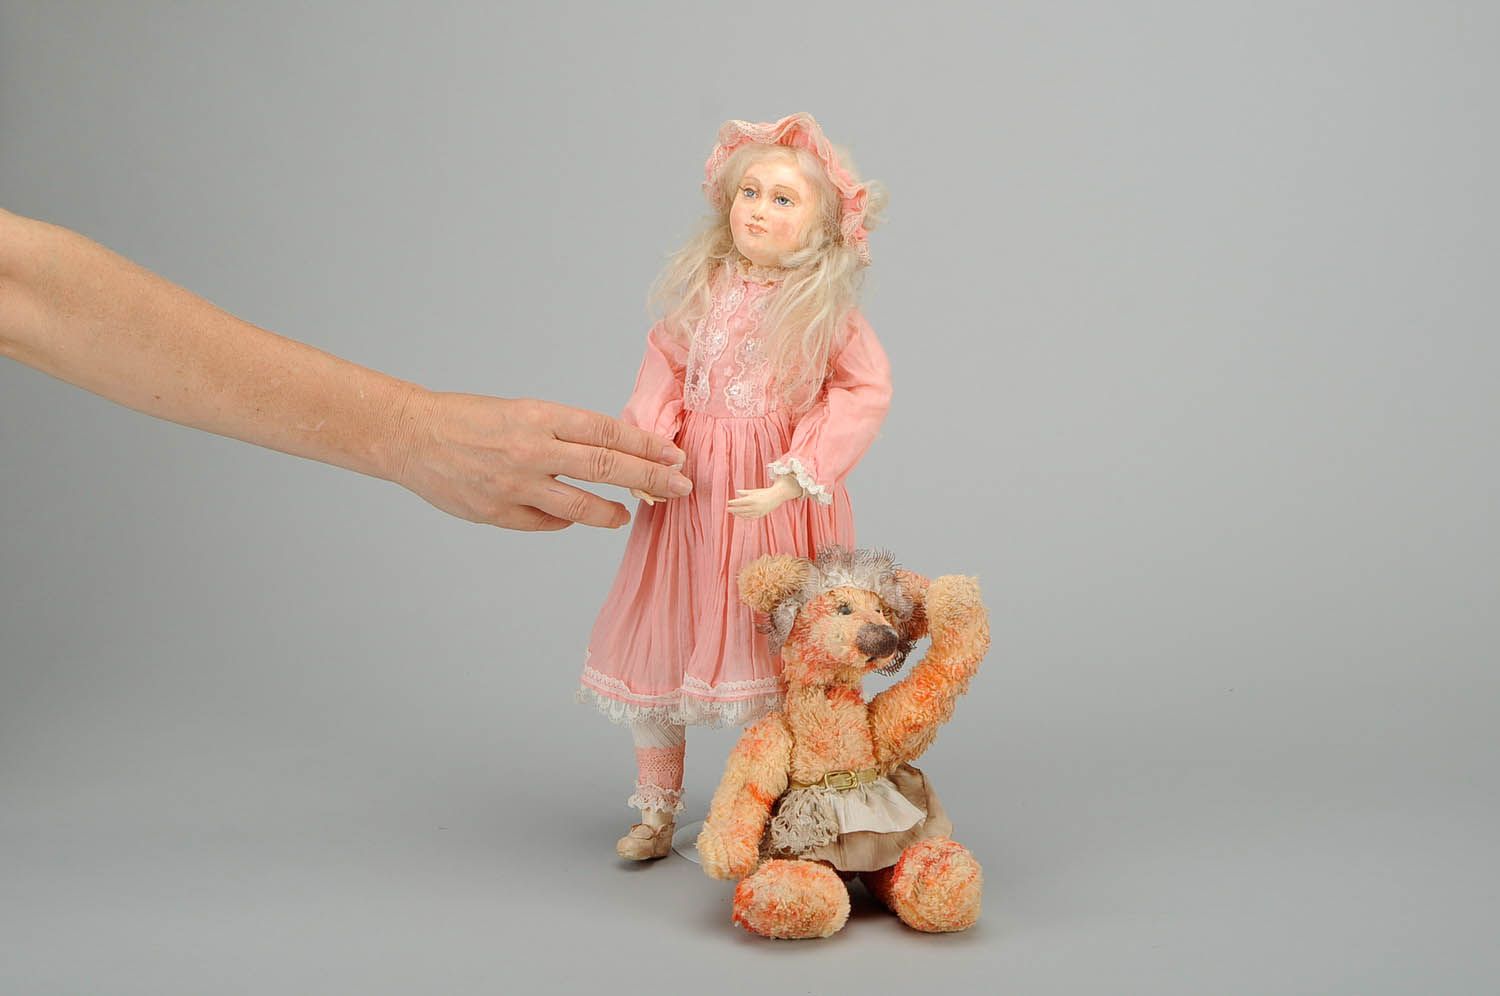 Авторская игровая кукла Маша и медведь фото 2